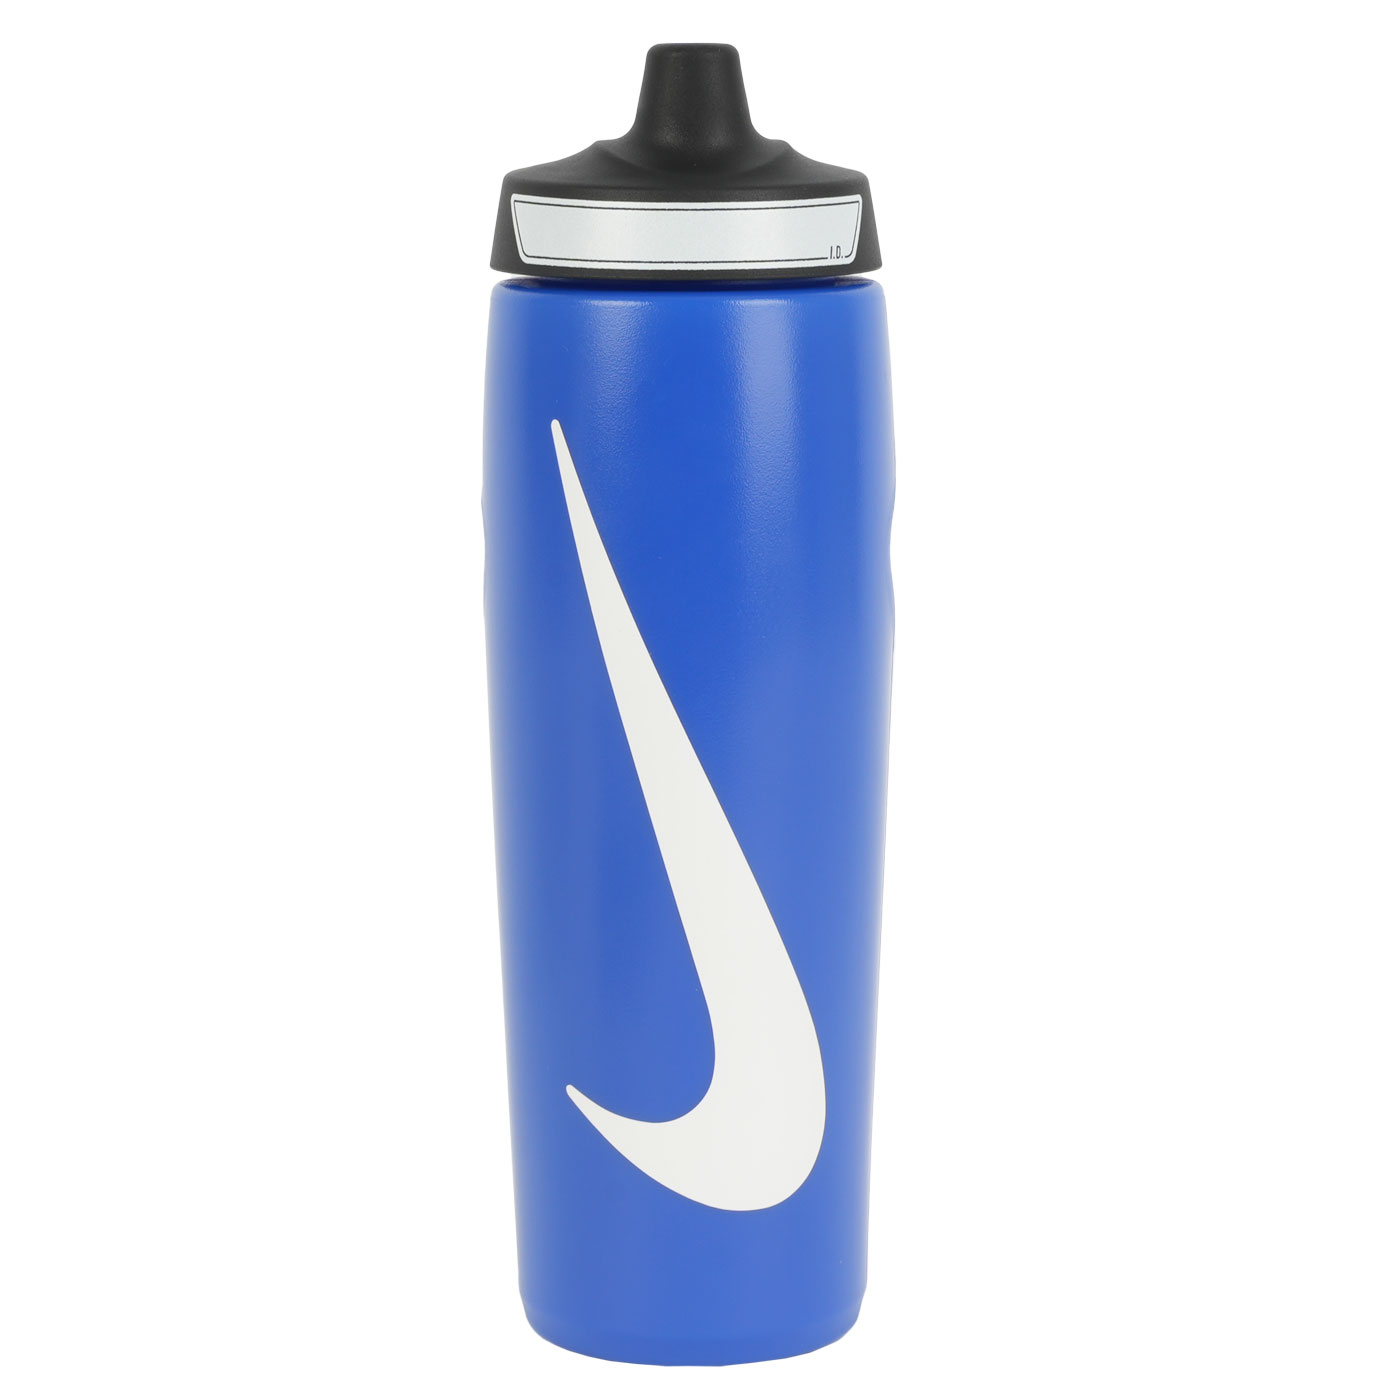 Produktbild von Nike Refuel Bottle Grip Sportflasche 24 oz / 709ml - game royal/black/white 417